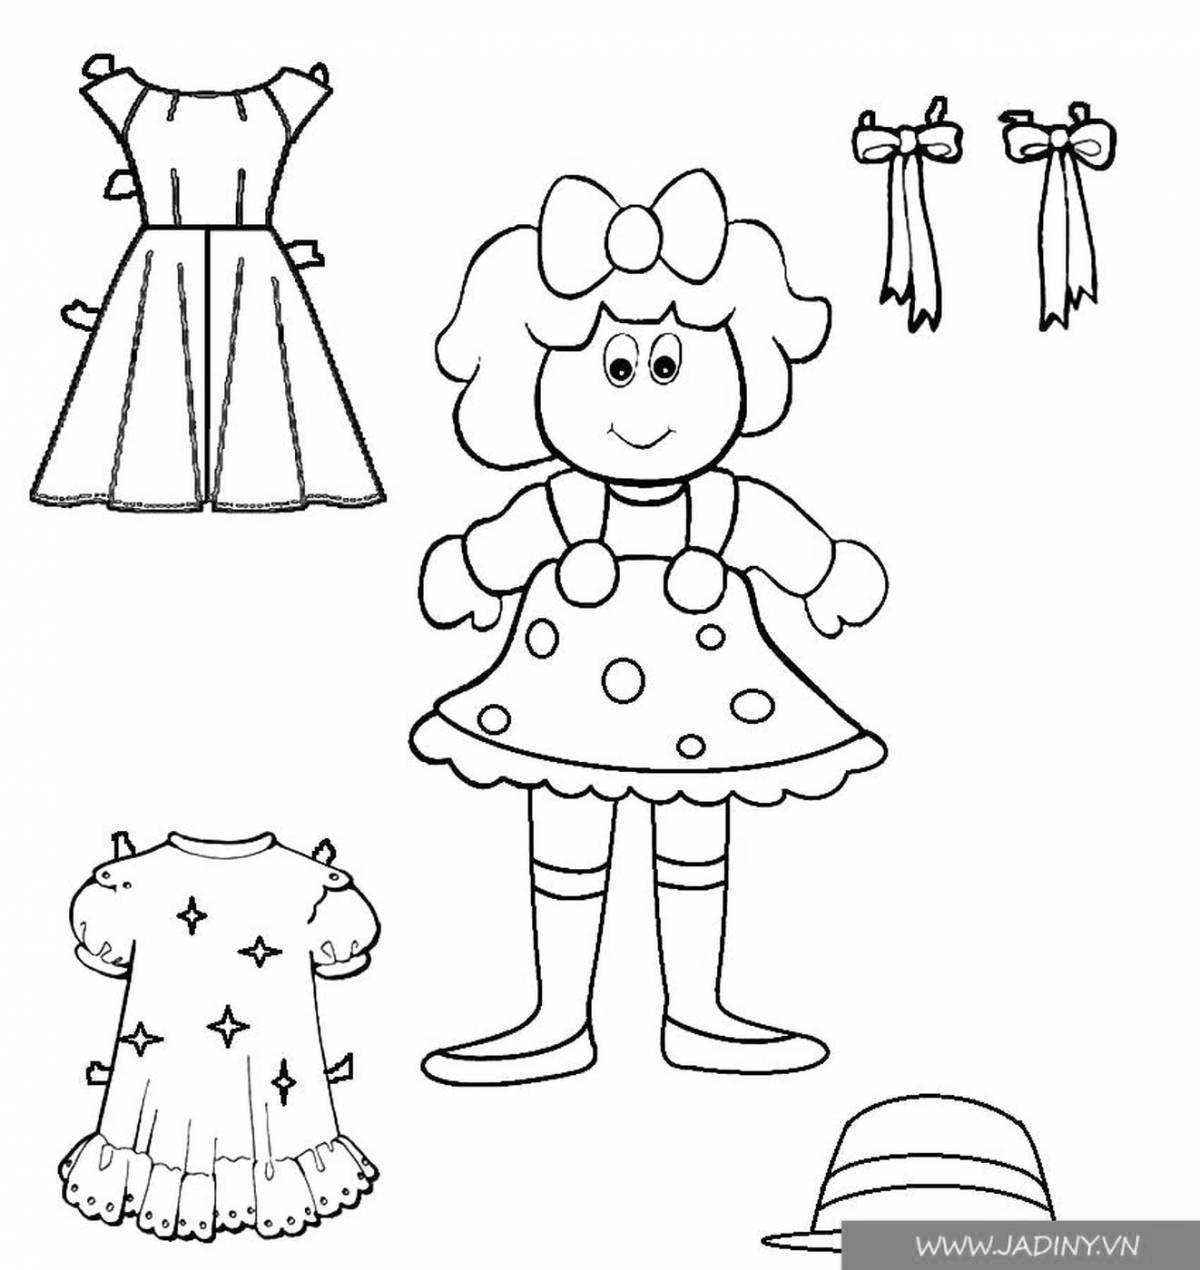 Одежда для куклы раскраска для детей